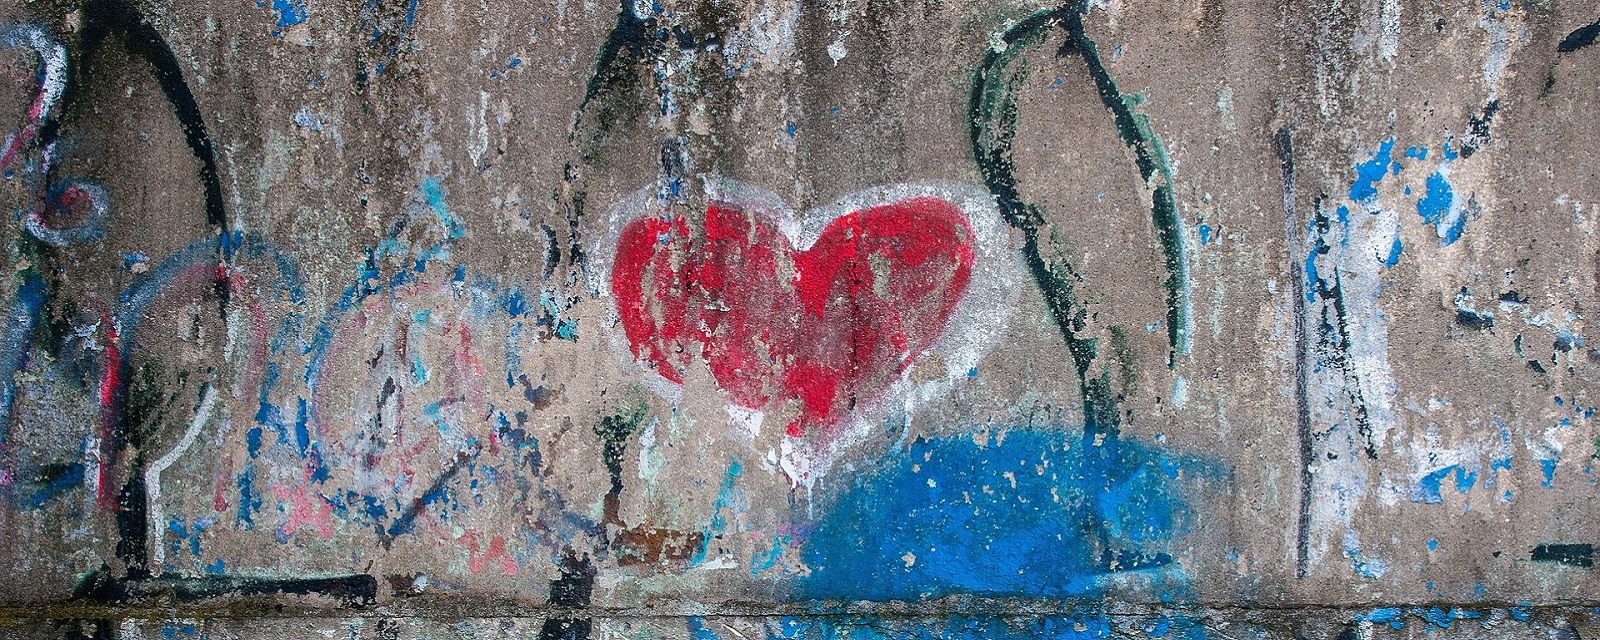 Grafitti in Herzform auf einer Wand